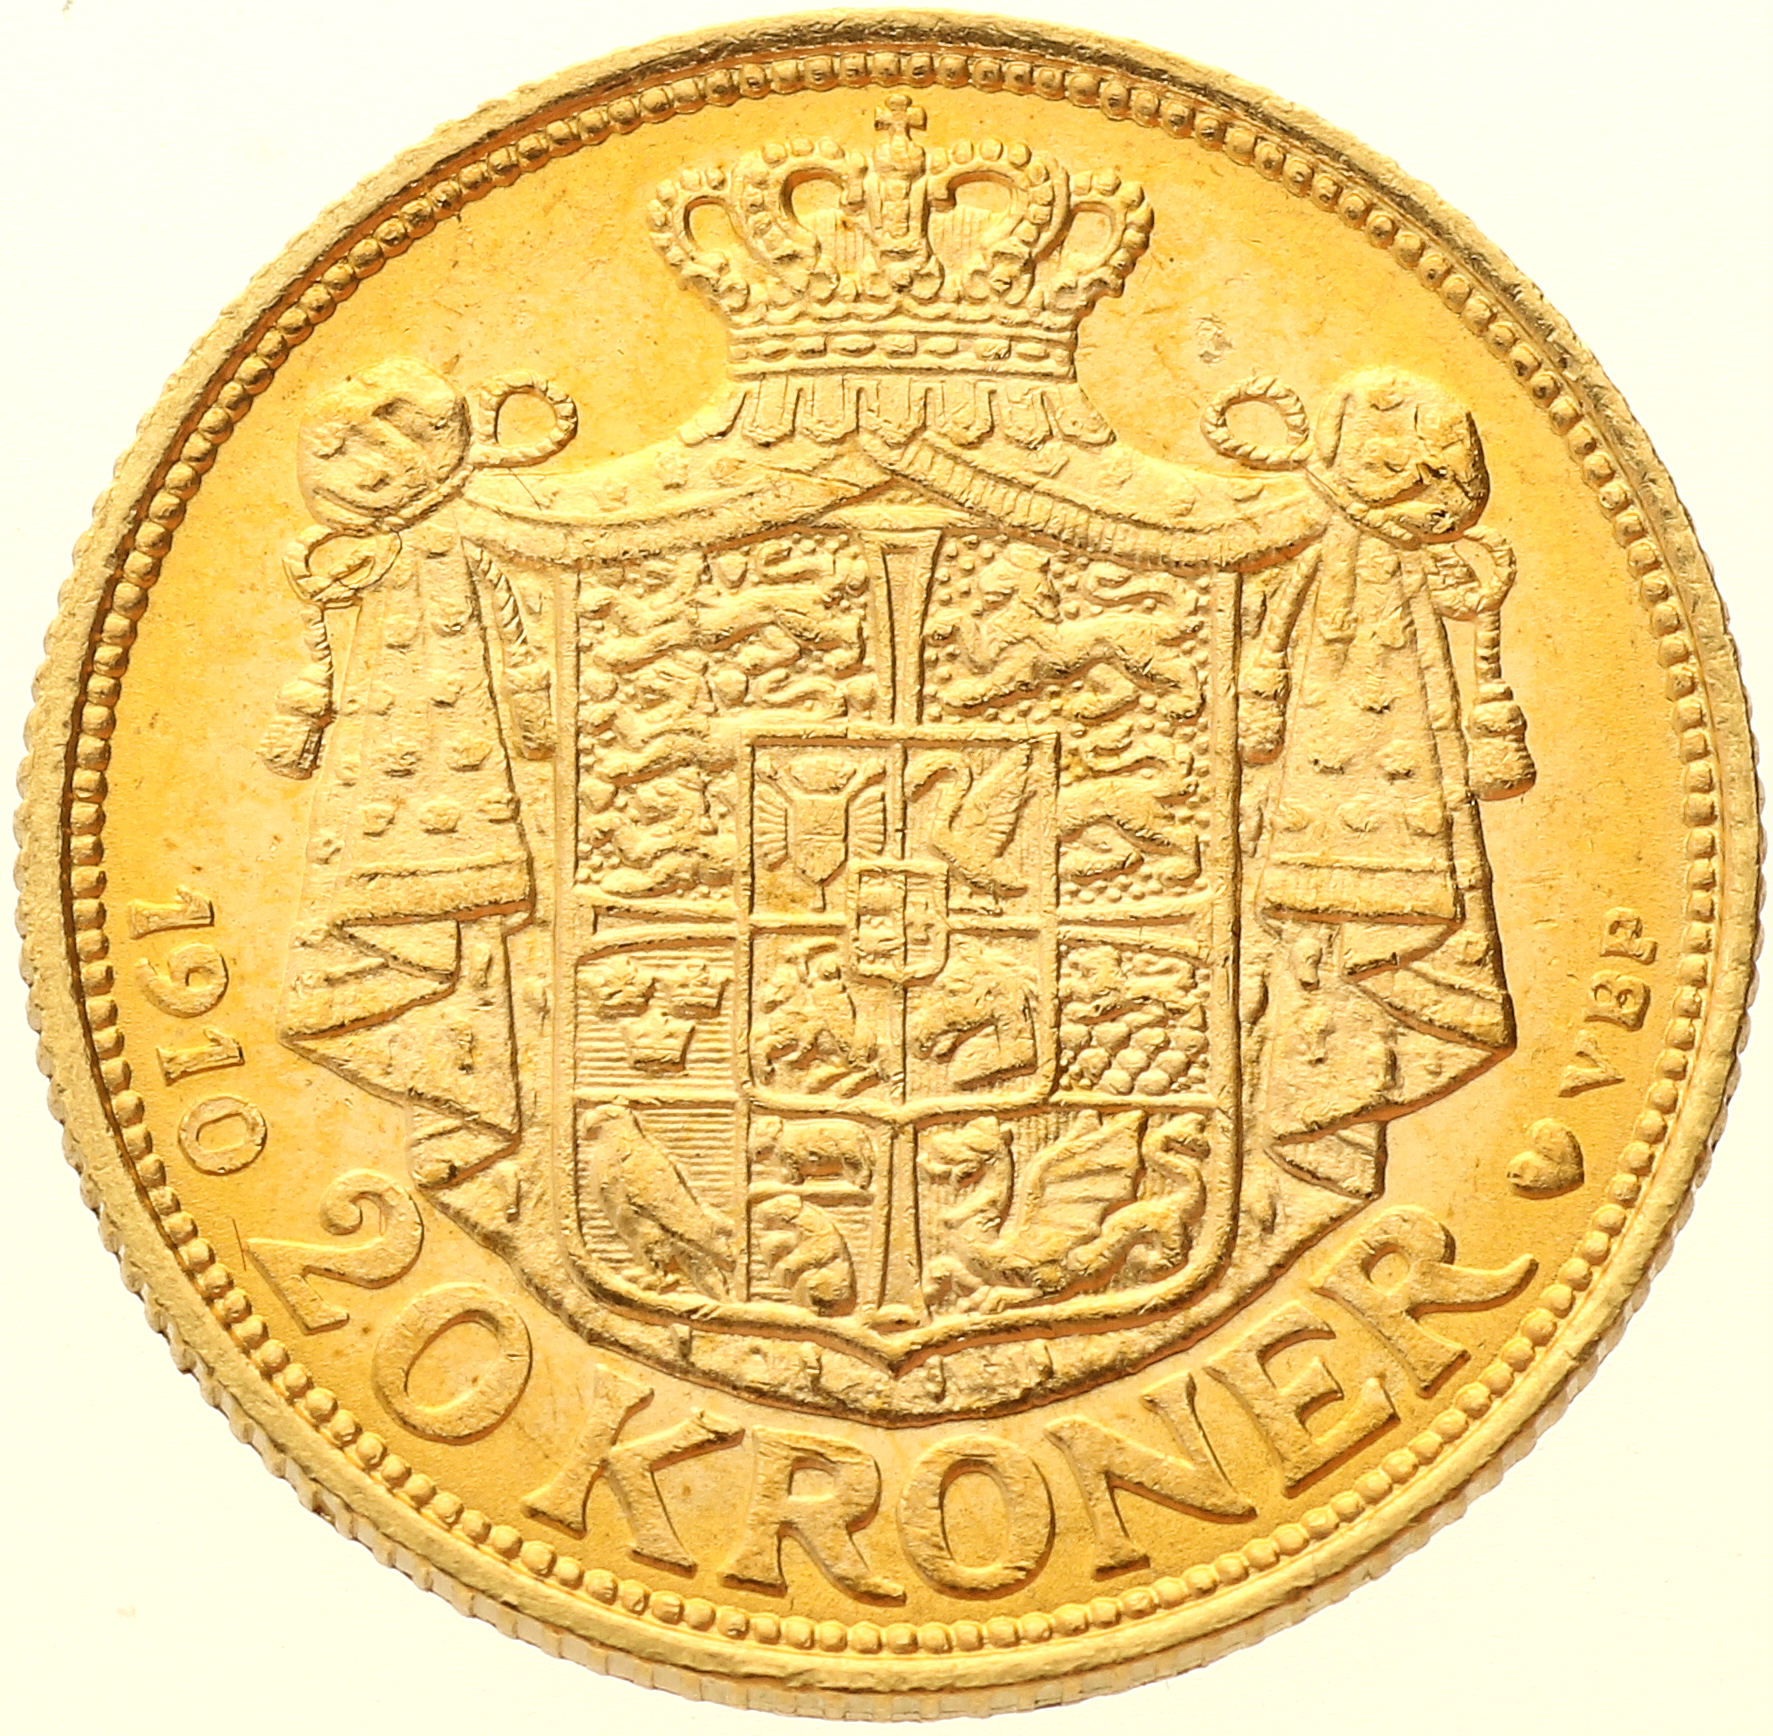 Denmark - 20 Kroner - 1910 - Frederik VIII